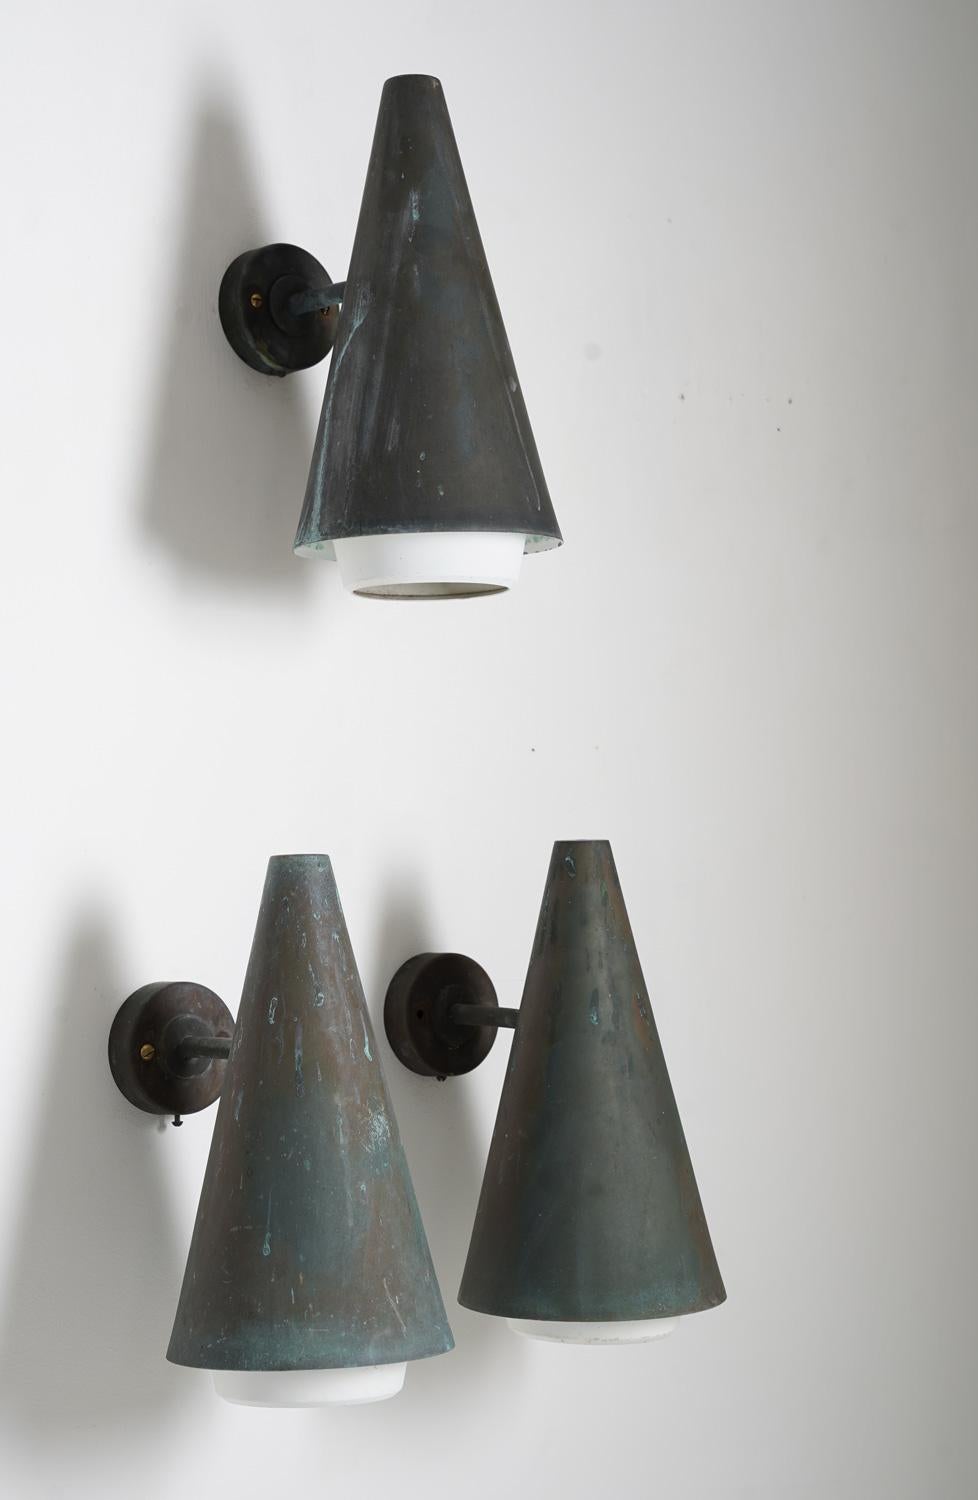 Très rares appliques d'extérieur par Hans-Agne Jakobsson, vers 1960.

Ces lampes sont fabriquées en cuivre massif avec des diffuseurs en métal.

Condit : Très bon état avec une grande patine.

